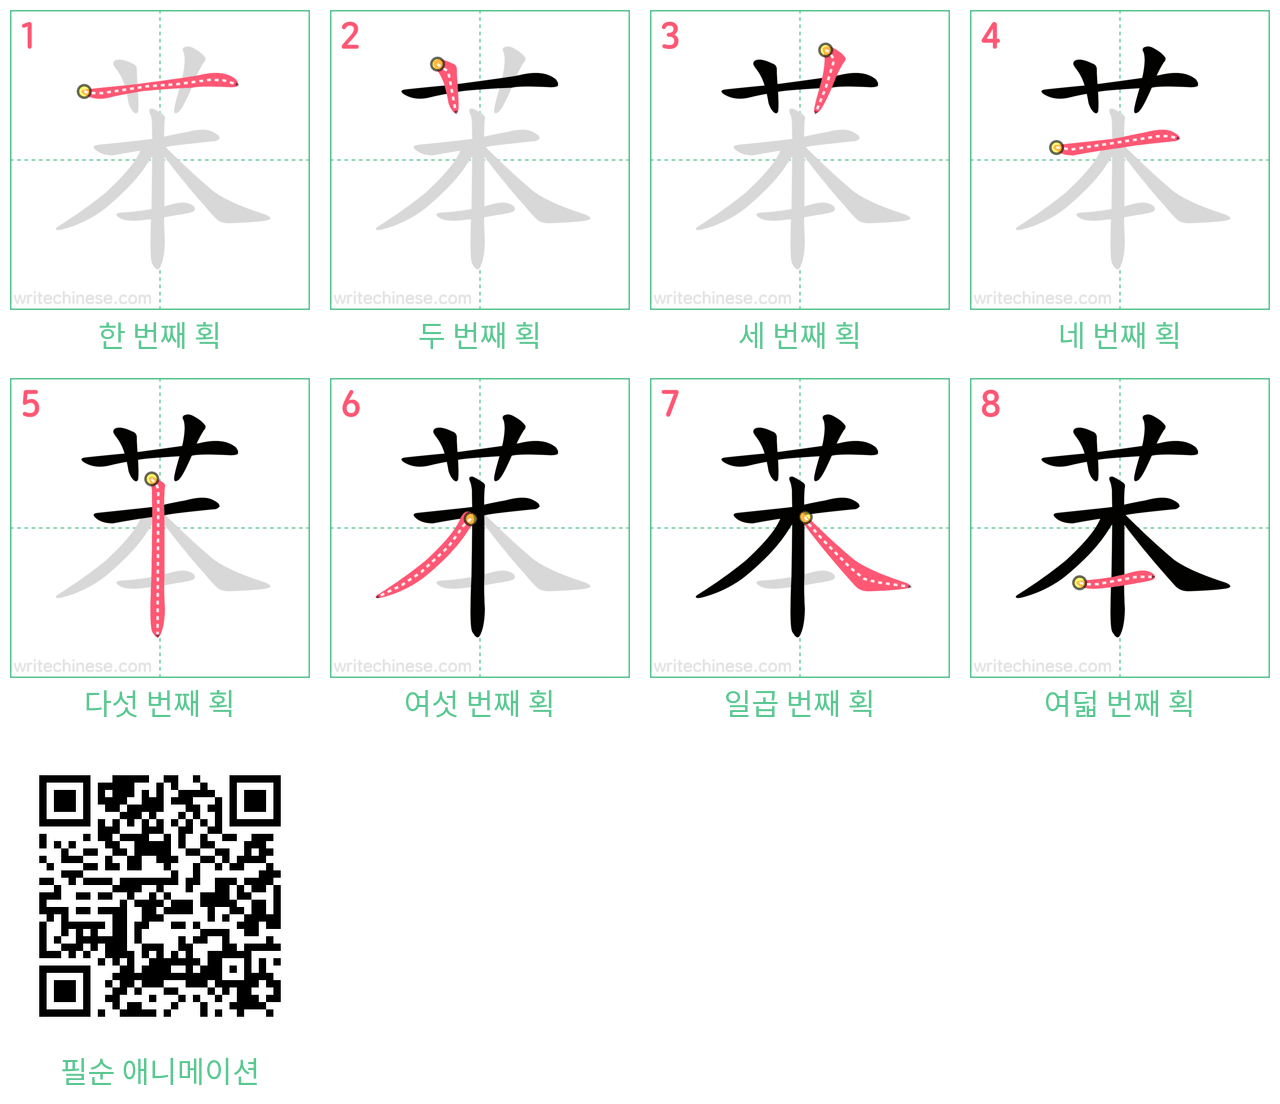 苯 step-by-step stroke order diagrams